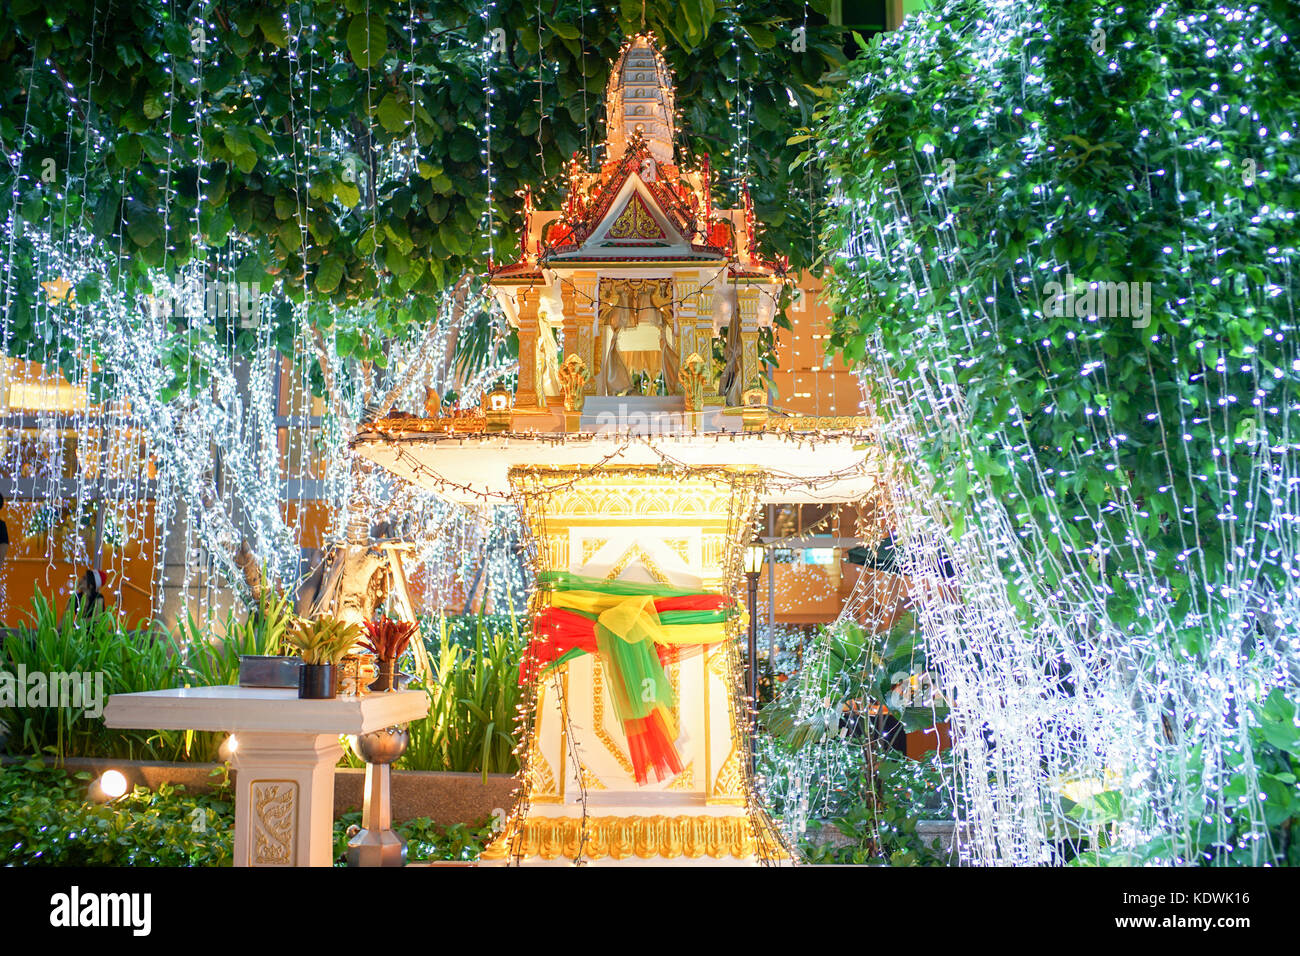 El santuario de Tailandia en la noche está adornado con luces LED en el árbol. esto es tan bellamente decorado. Foto de stock